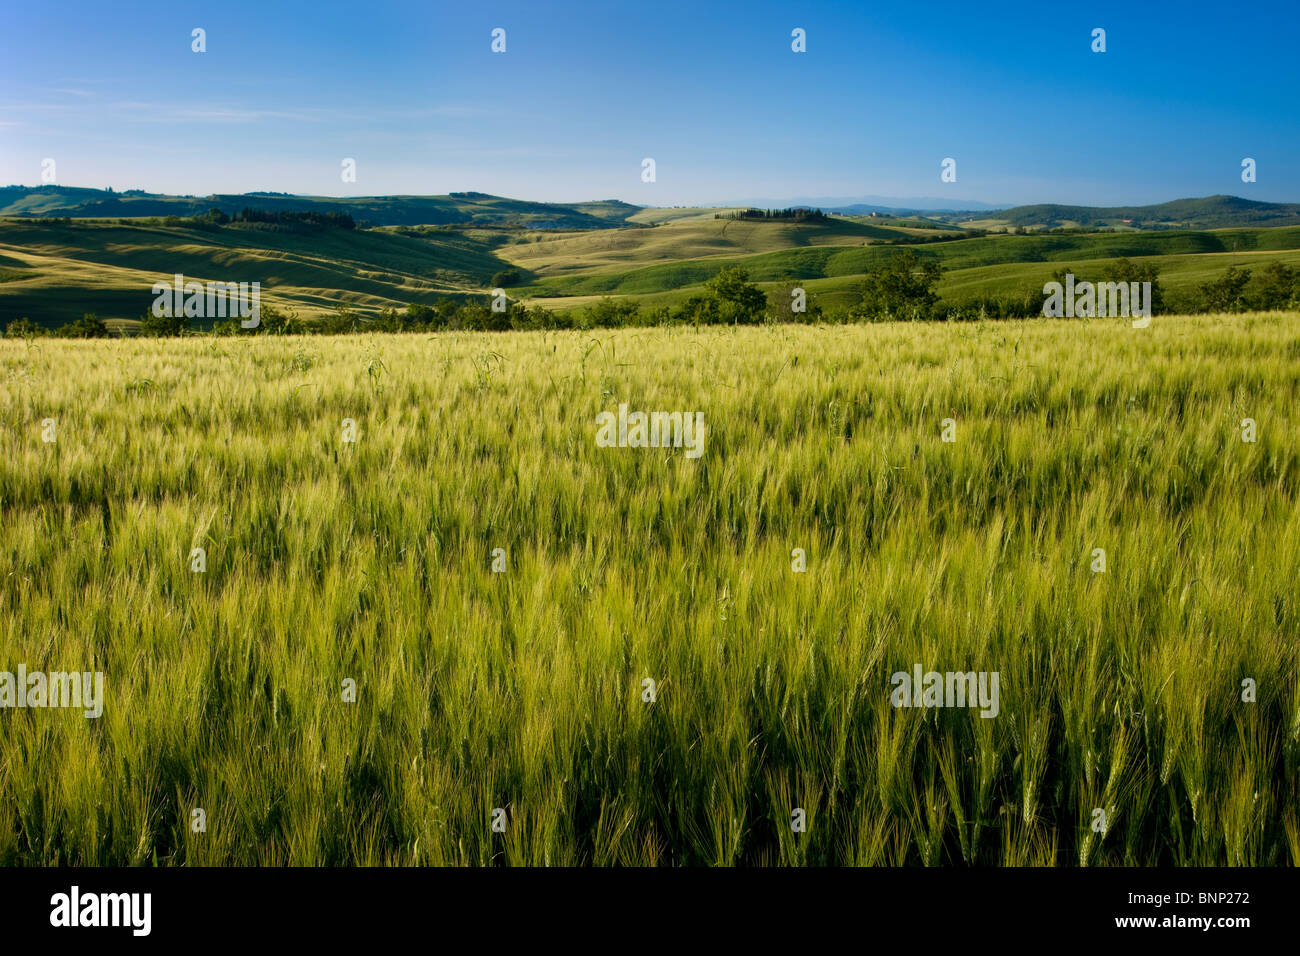 Champ de blé et la campagne toscane, près de San Quirico, dans le Val d'Orcia, Italie Banque D'Images